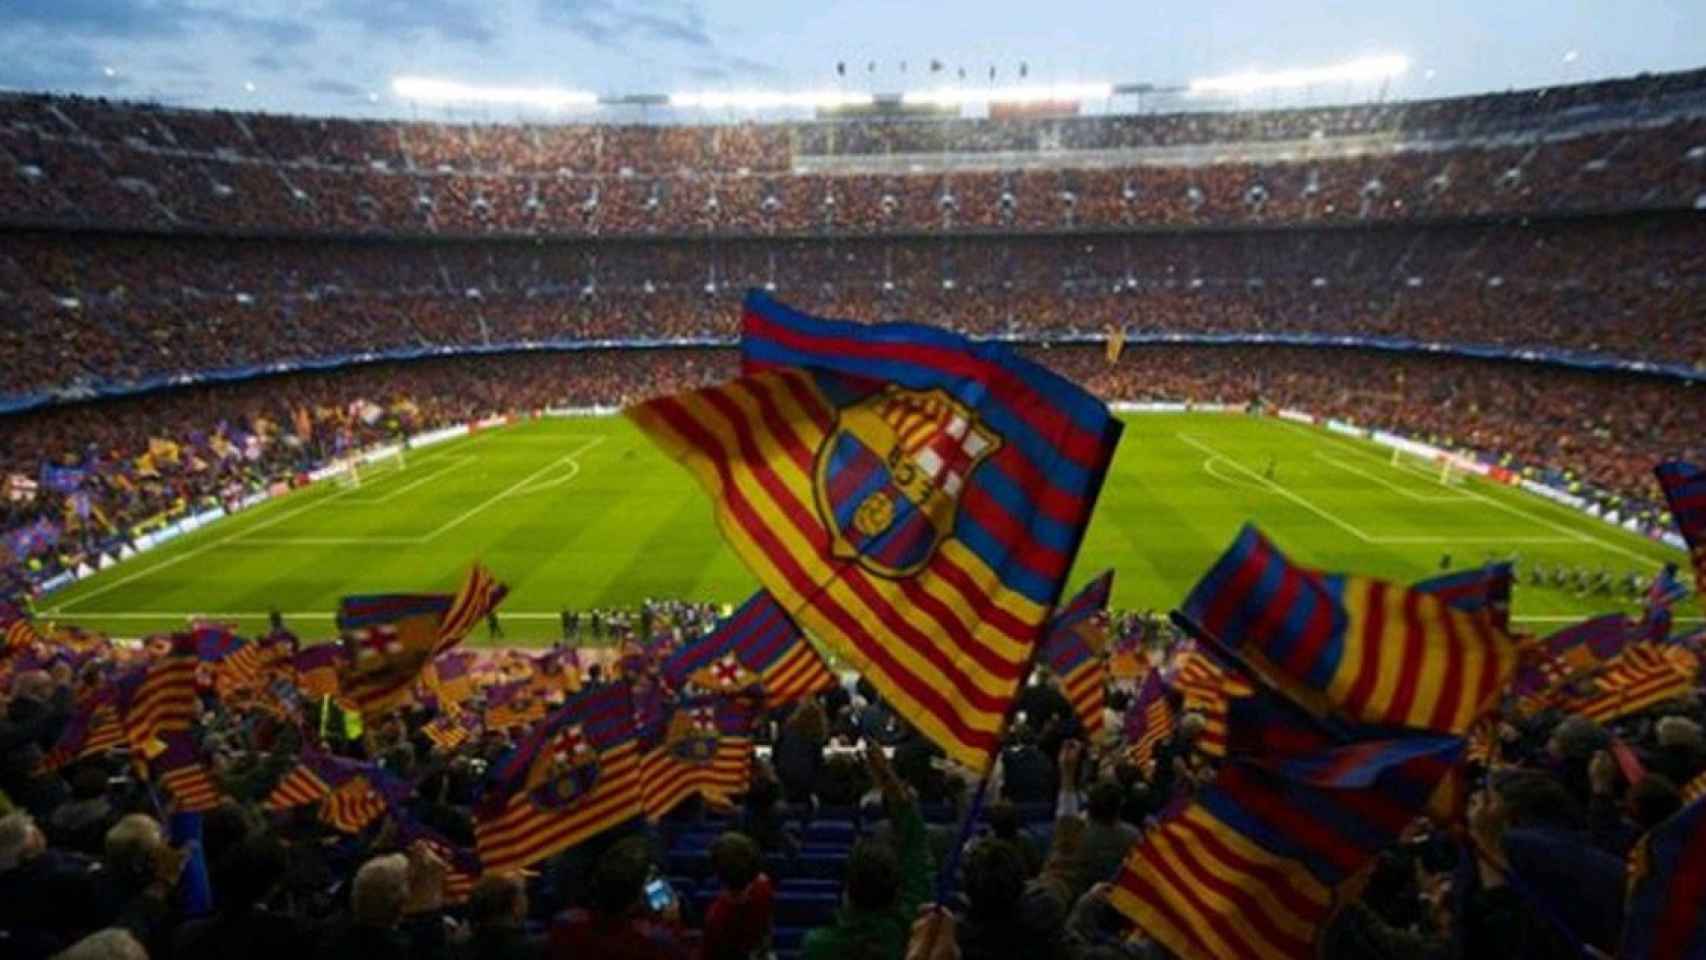 El Camp Nou volverá a sonar 'Els Segadors', himno oficial de Cataluña. La ‘victoria’ del Barça en el Clásico / EFE